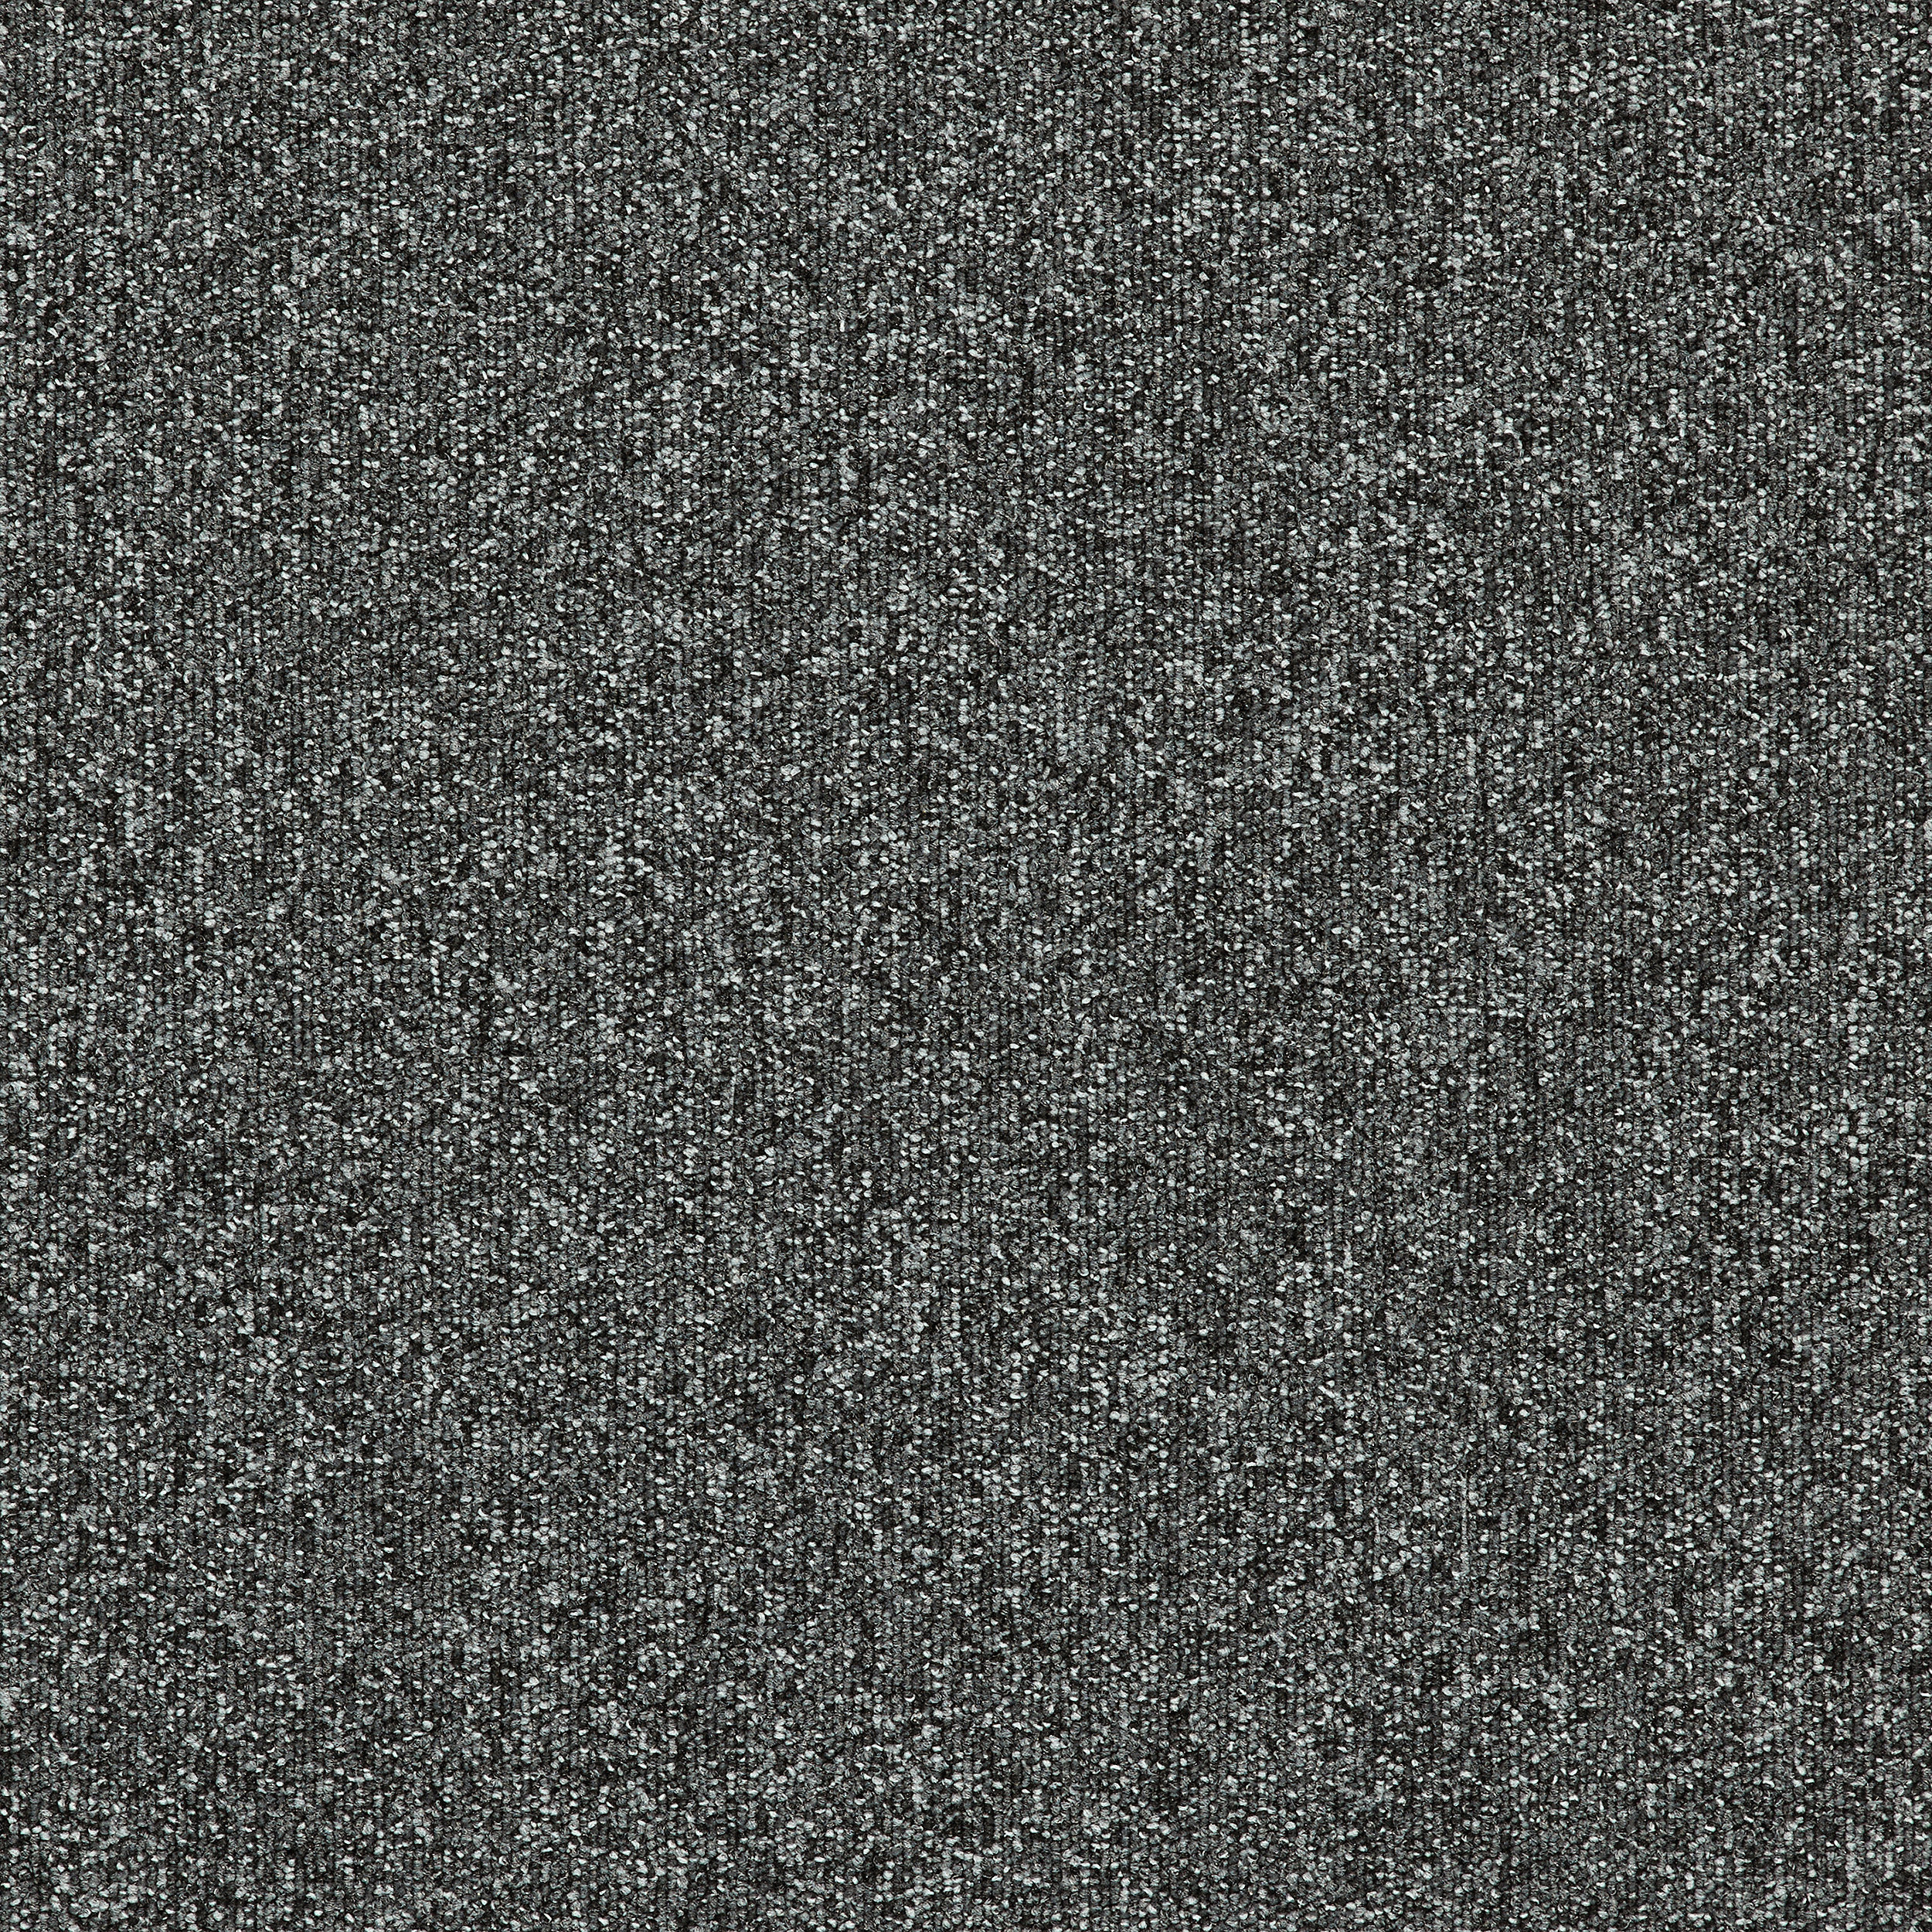 Heuga 727 Carpet Tile In Graphite afbeeldingnummer 12